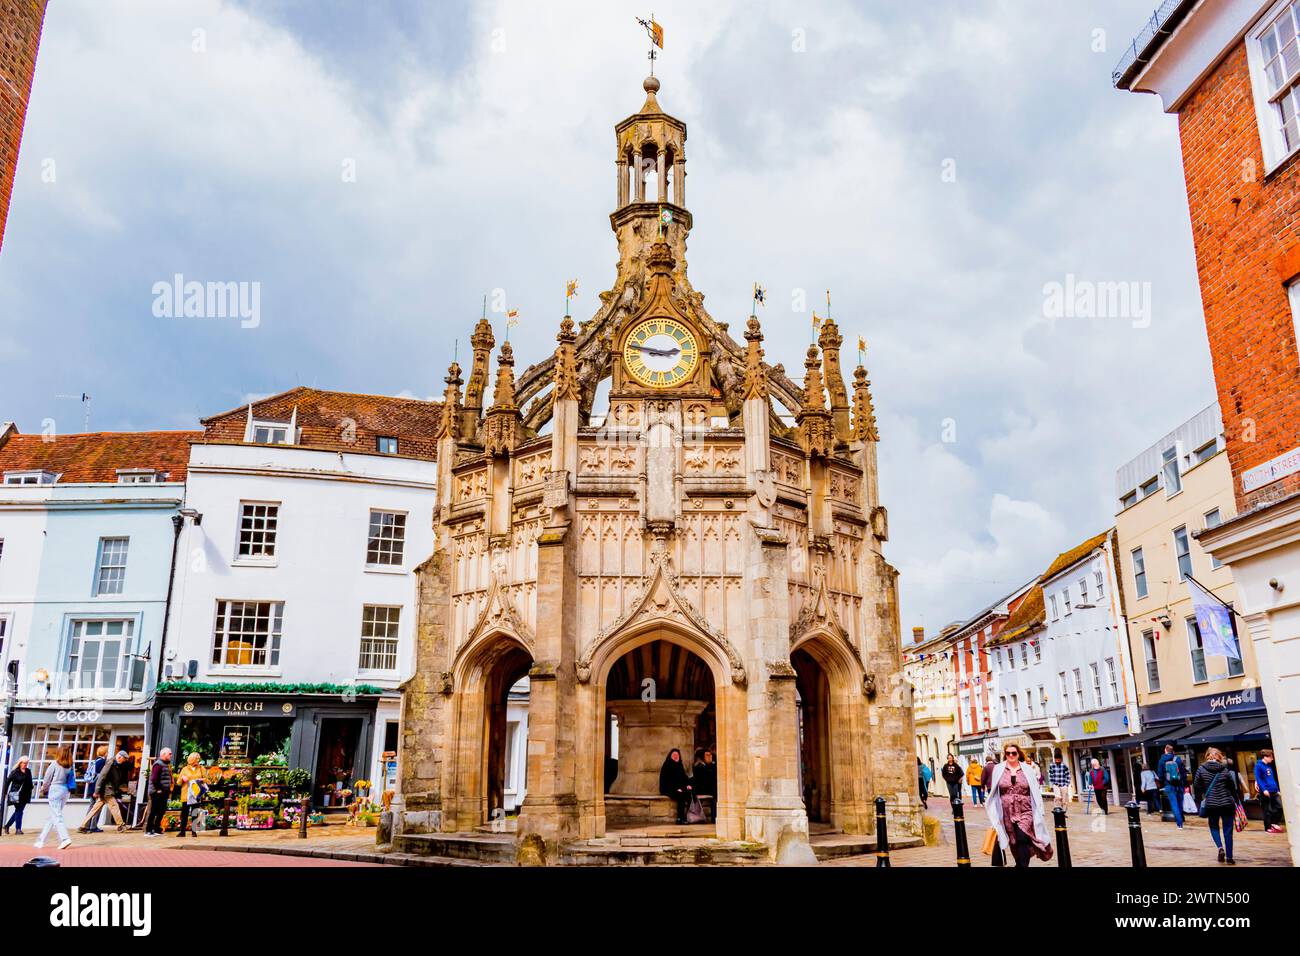 Chichester Cross, eine Art Butterkreuz, die in alten Marktstädten bekannt ist, wurde 1501 als überdachter Marktplatz erbaut und steht an der Kreuzung Stockfoto